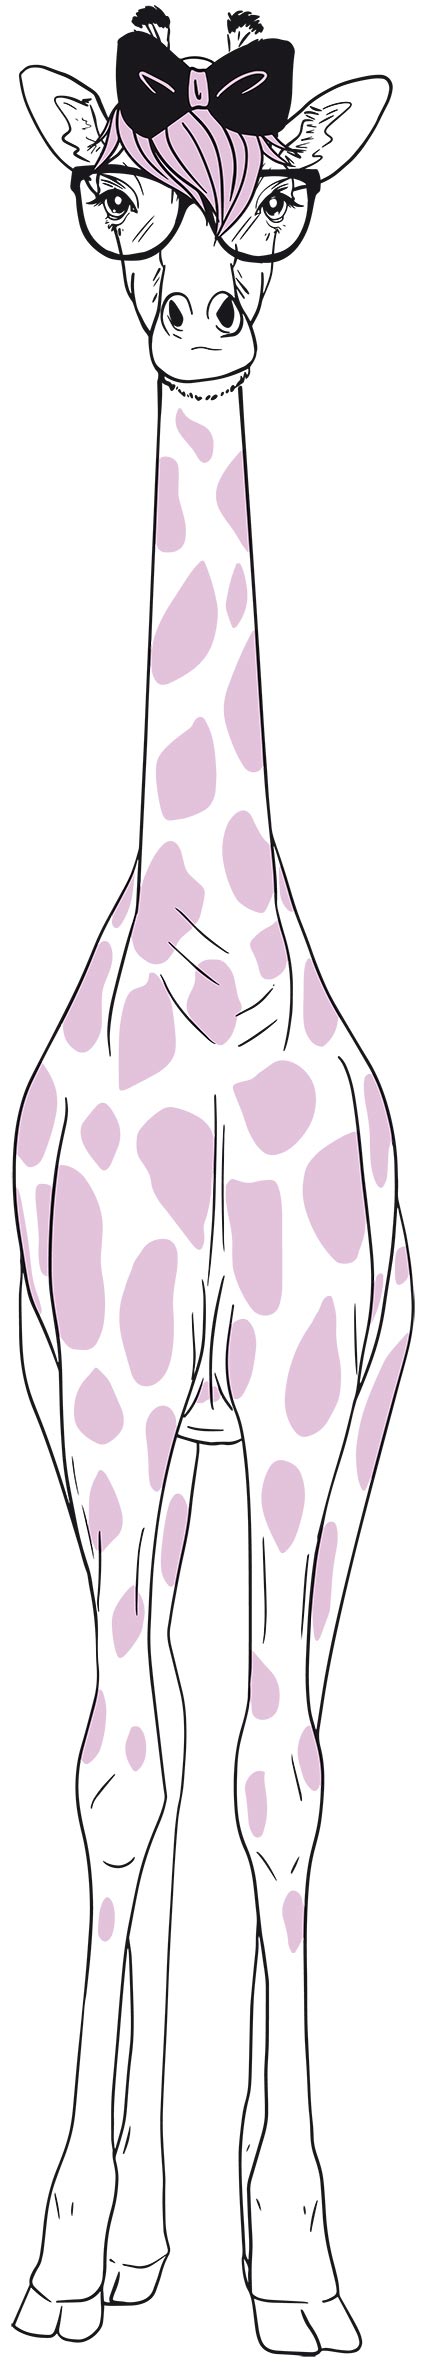 Giraffe mit Brille und Masche (hoch)